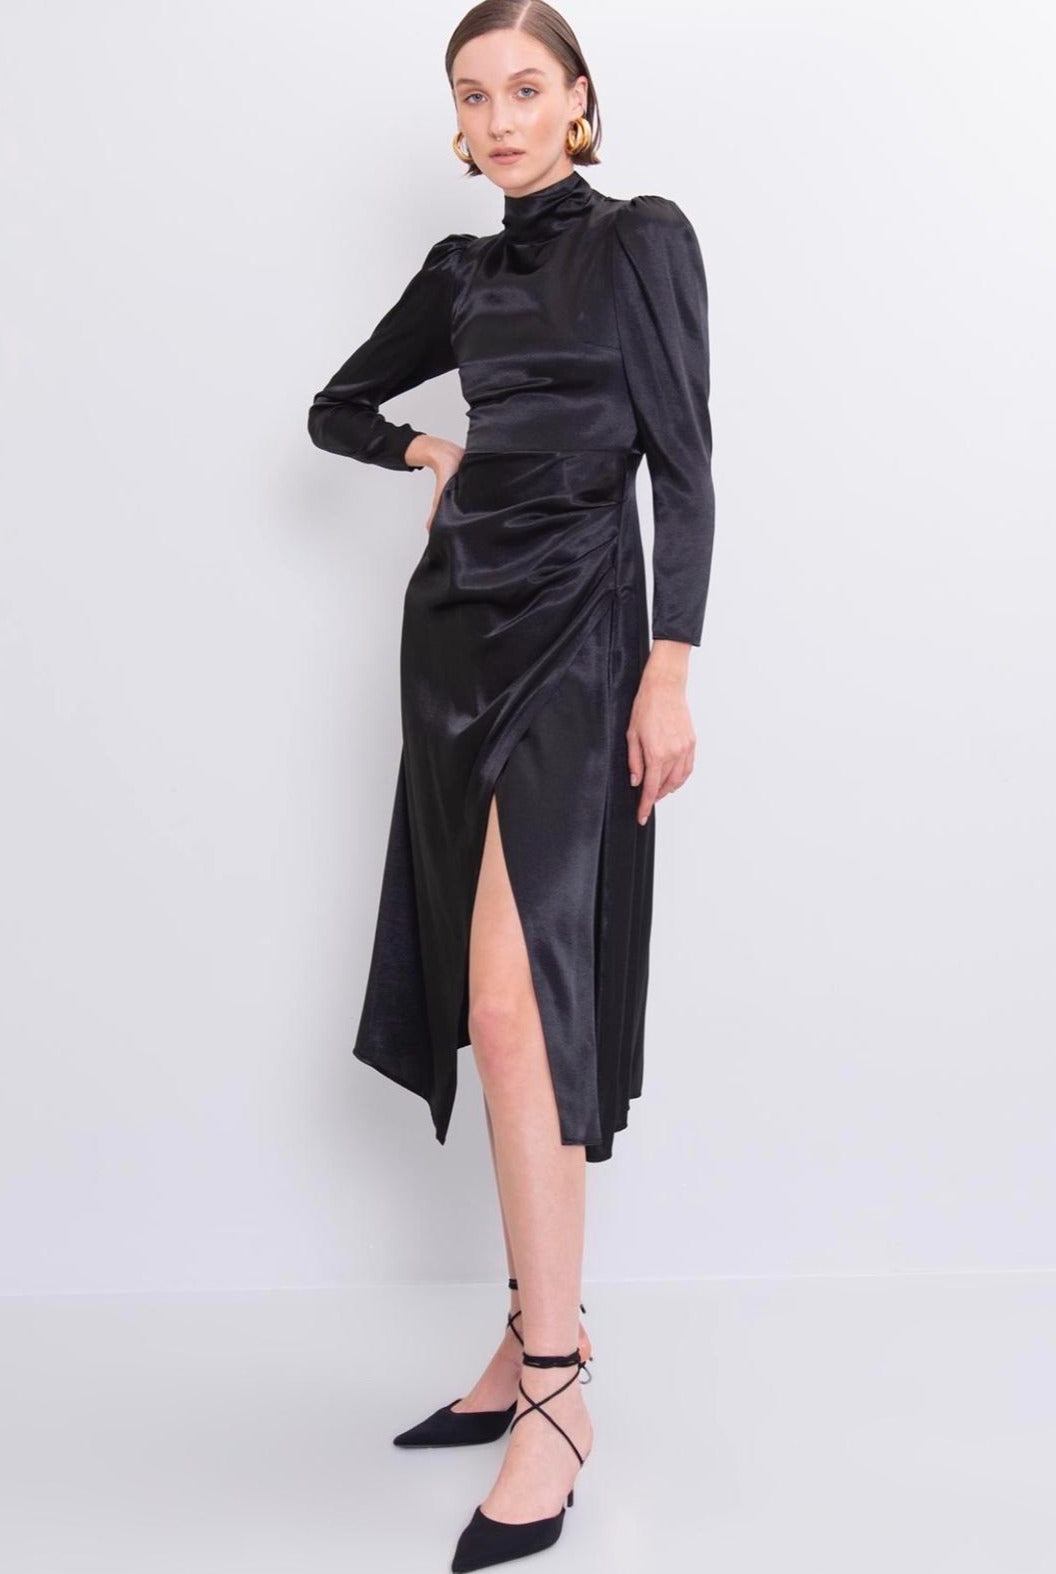 Дамска рокля SIBILA  https://bvseductive.com/products/дамска-рокля-sibila  45 % вискоза 55 % нилон официална дълга рокля в черен змийски десен в миди дължина с дълъг ръкав вталена кройка, подчертаваща фигурата изработена от приятна материя чудесен избор за Вашата визия